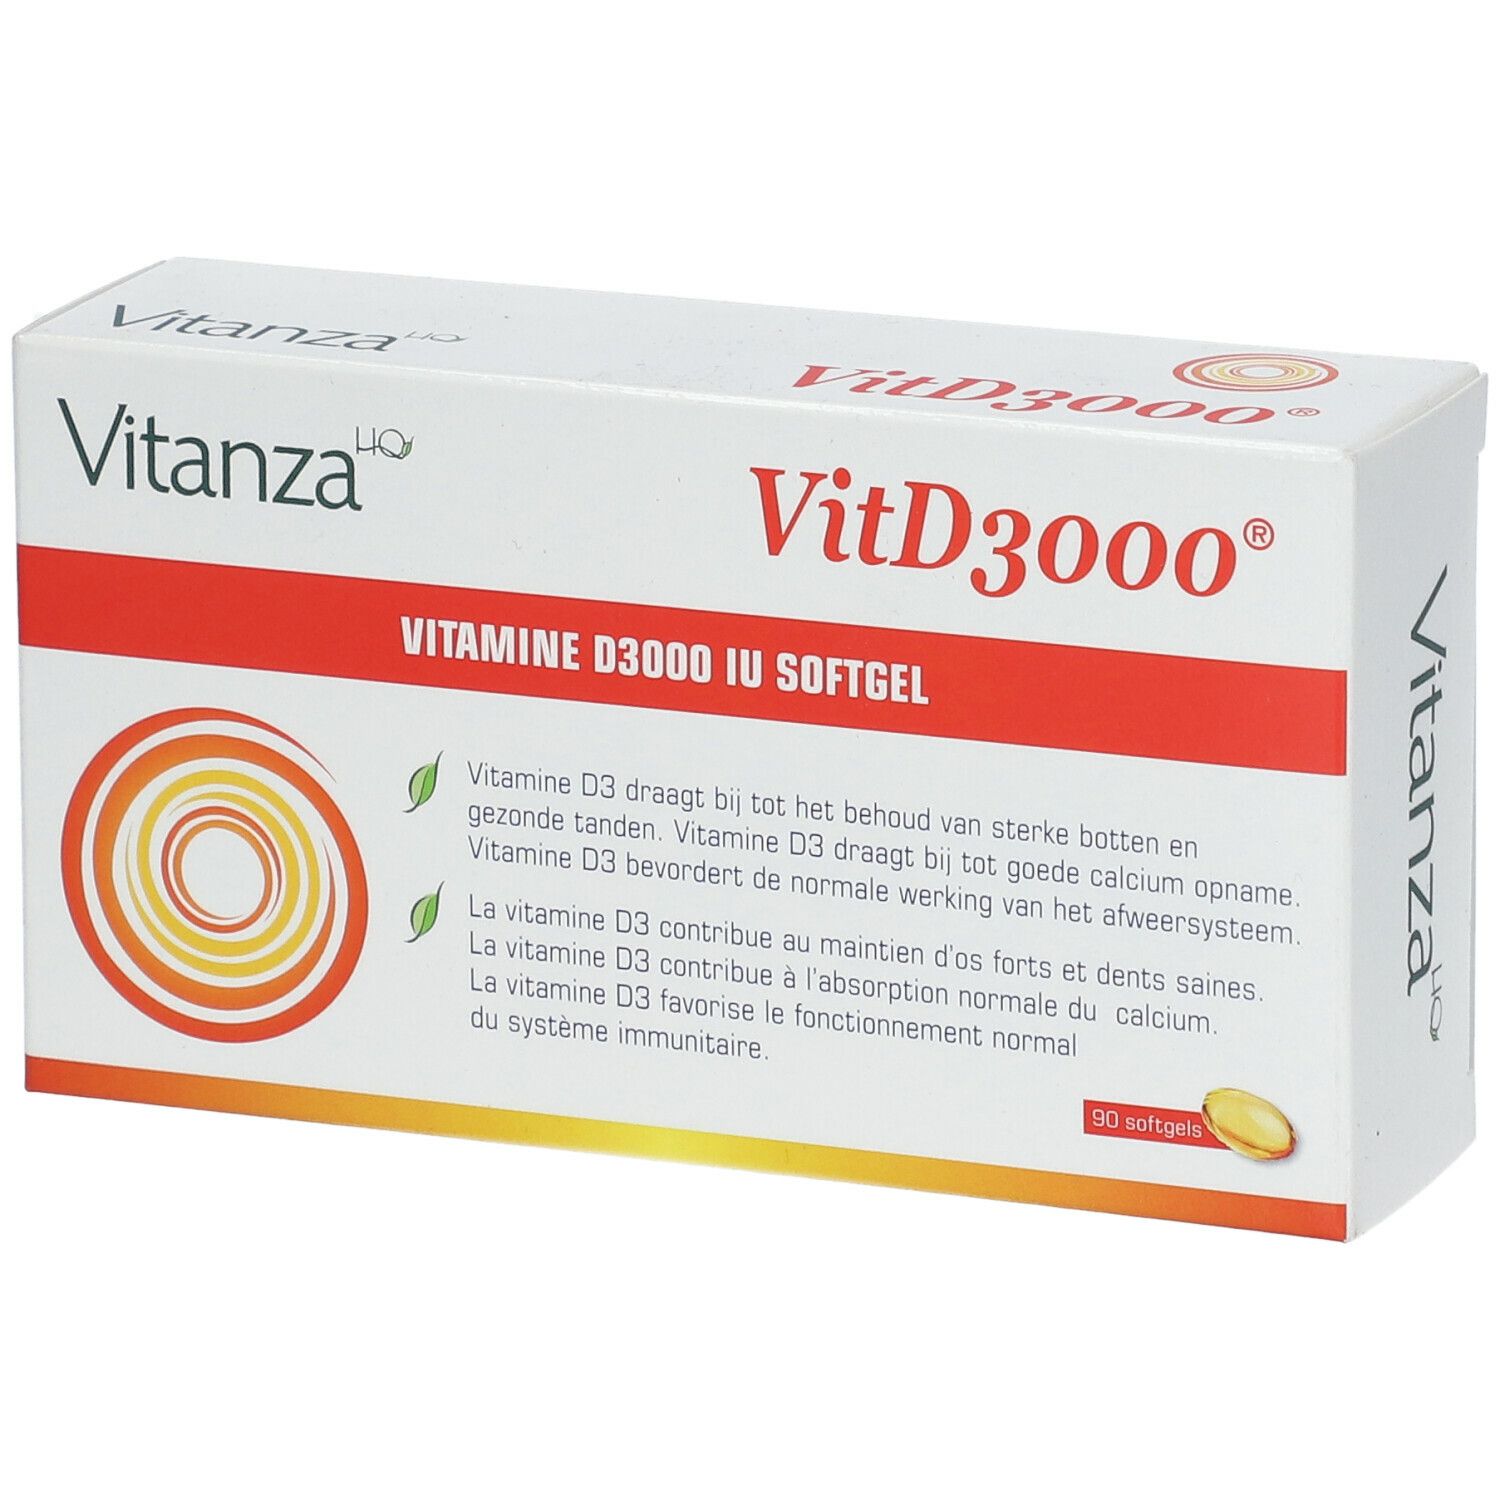 Vitanza HQ Vit D3000